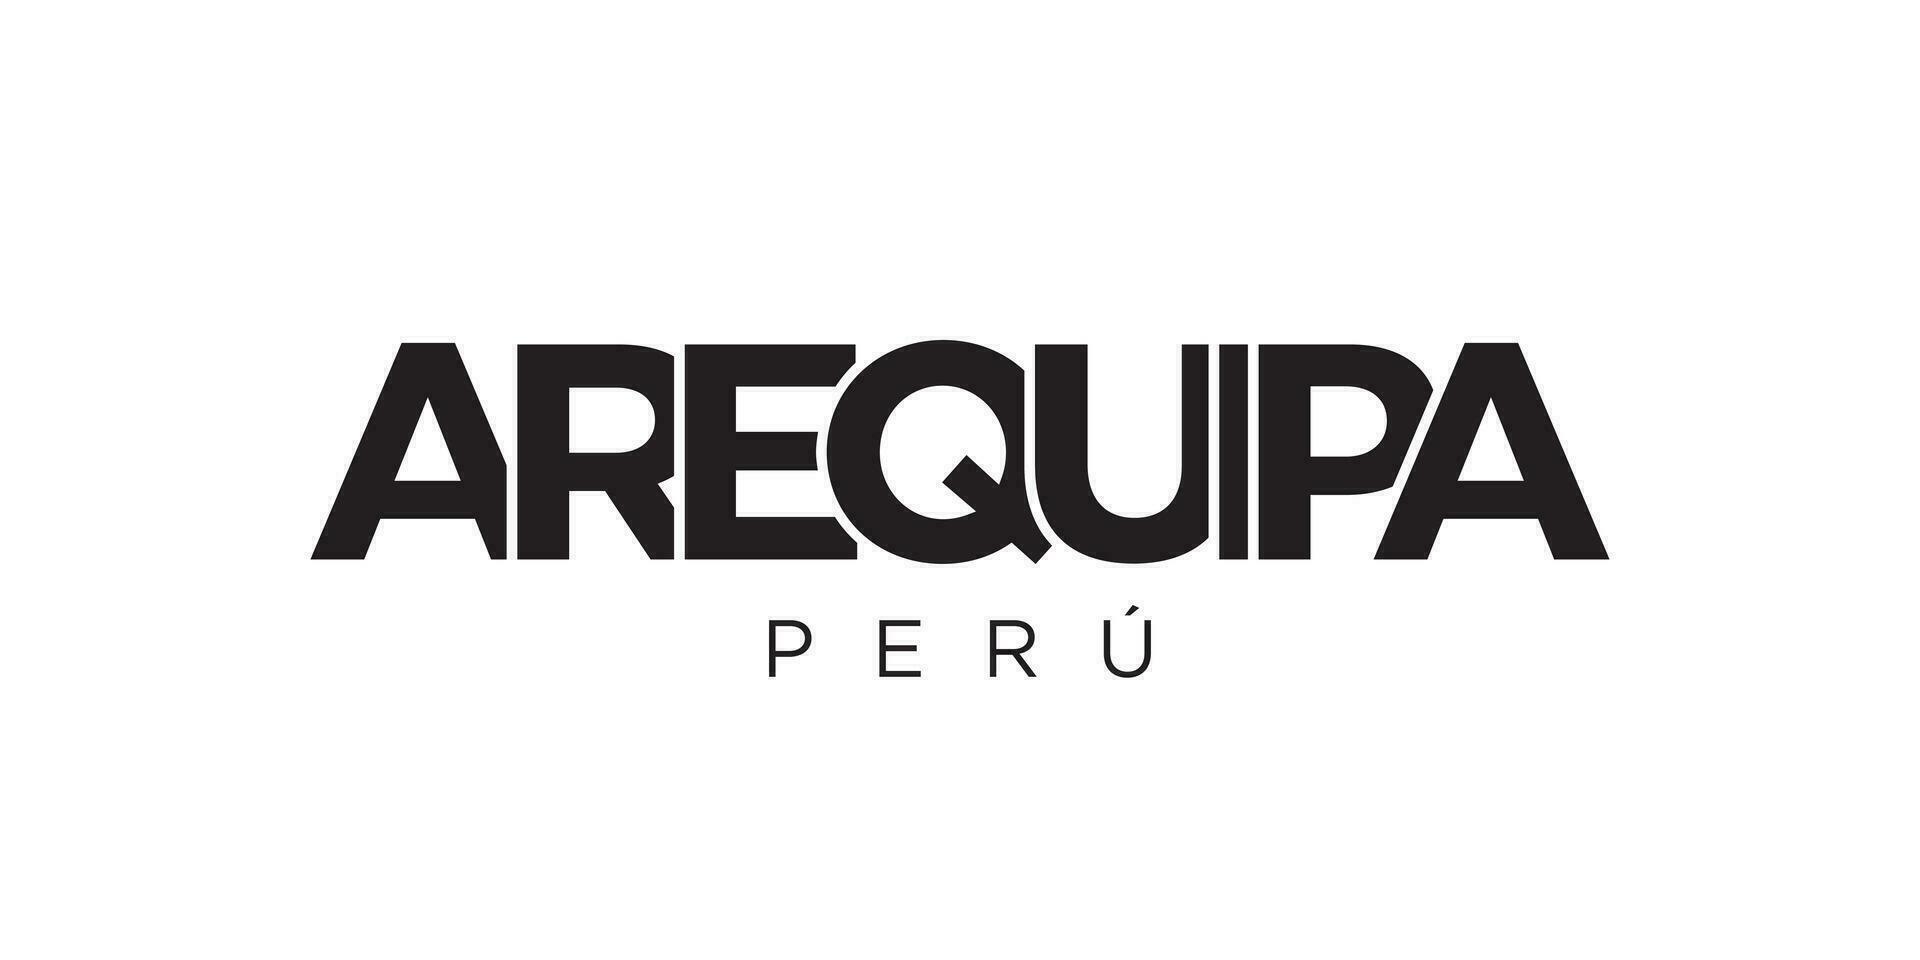 Arequipa dans le Pérou emblème. le conception Caractéristiques une géométrique style, vecteur illustration avec audacieux typographie dans une moderne Police de caractère. le graphique slogan caractères.